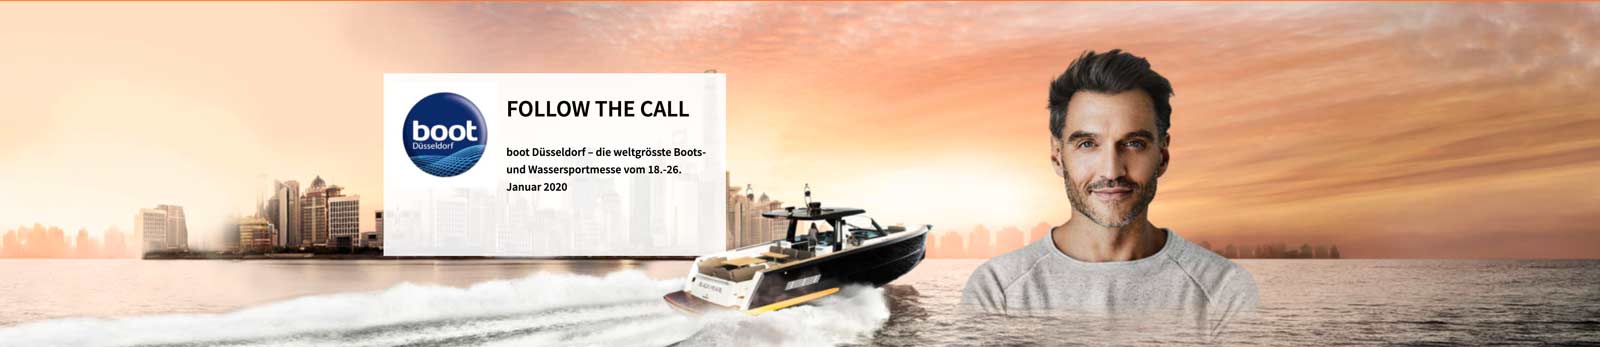 Yacht Méditerranée sera présent sur le salon de Düsseldorf en Allemagne qui se tiendra du 18 au 26 janvier 2020 - boot 2020